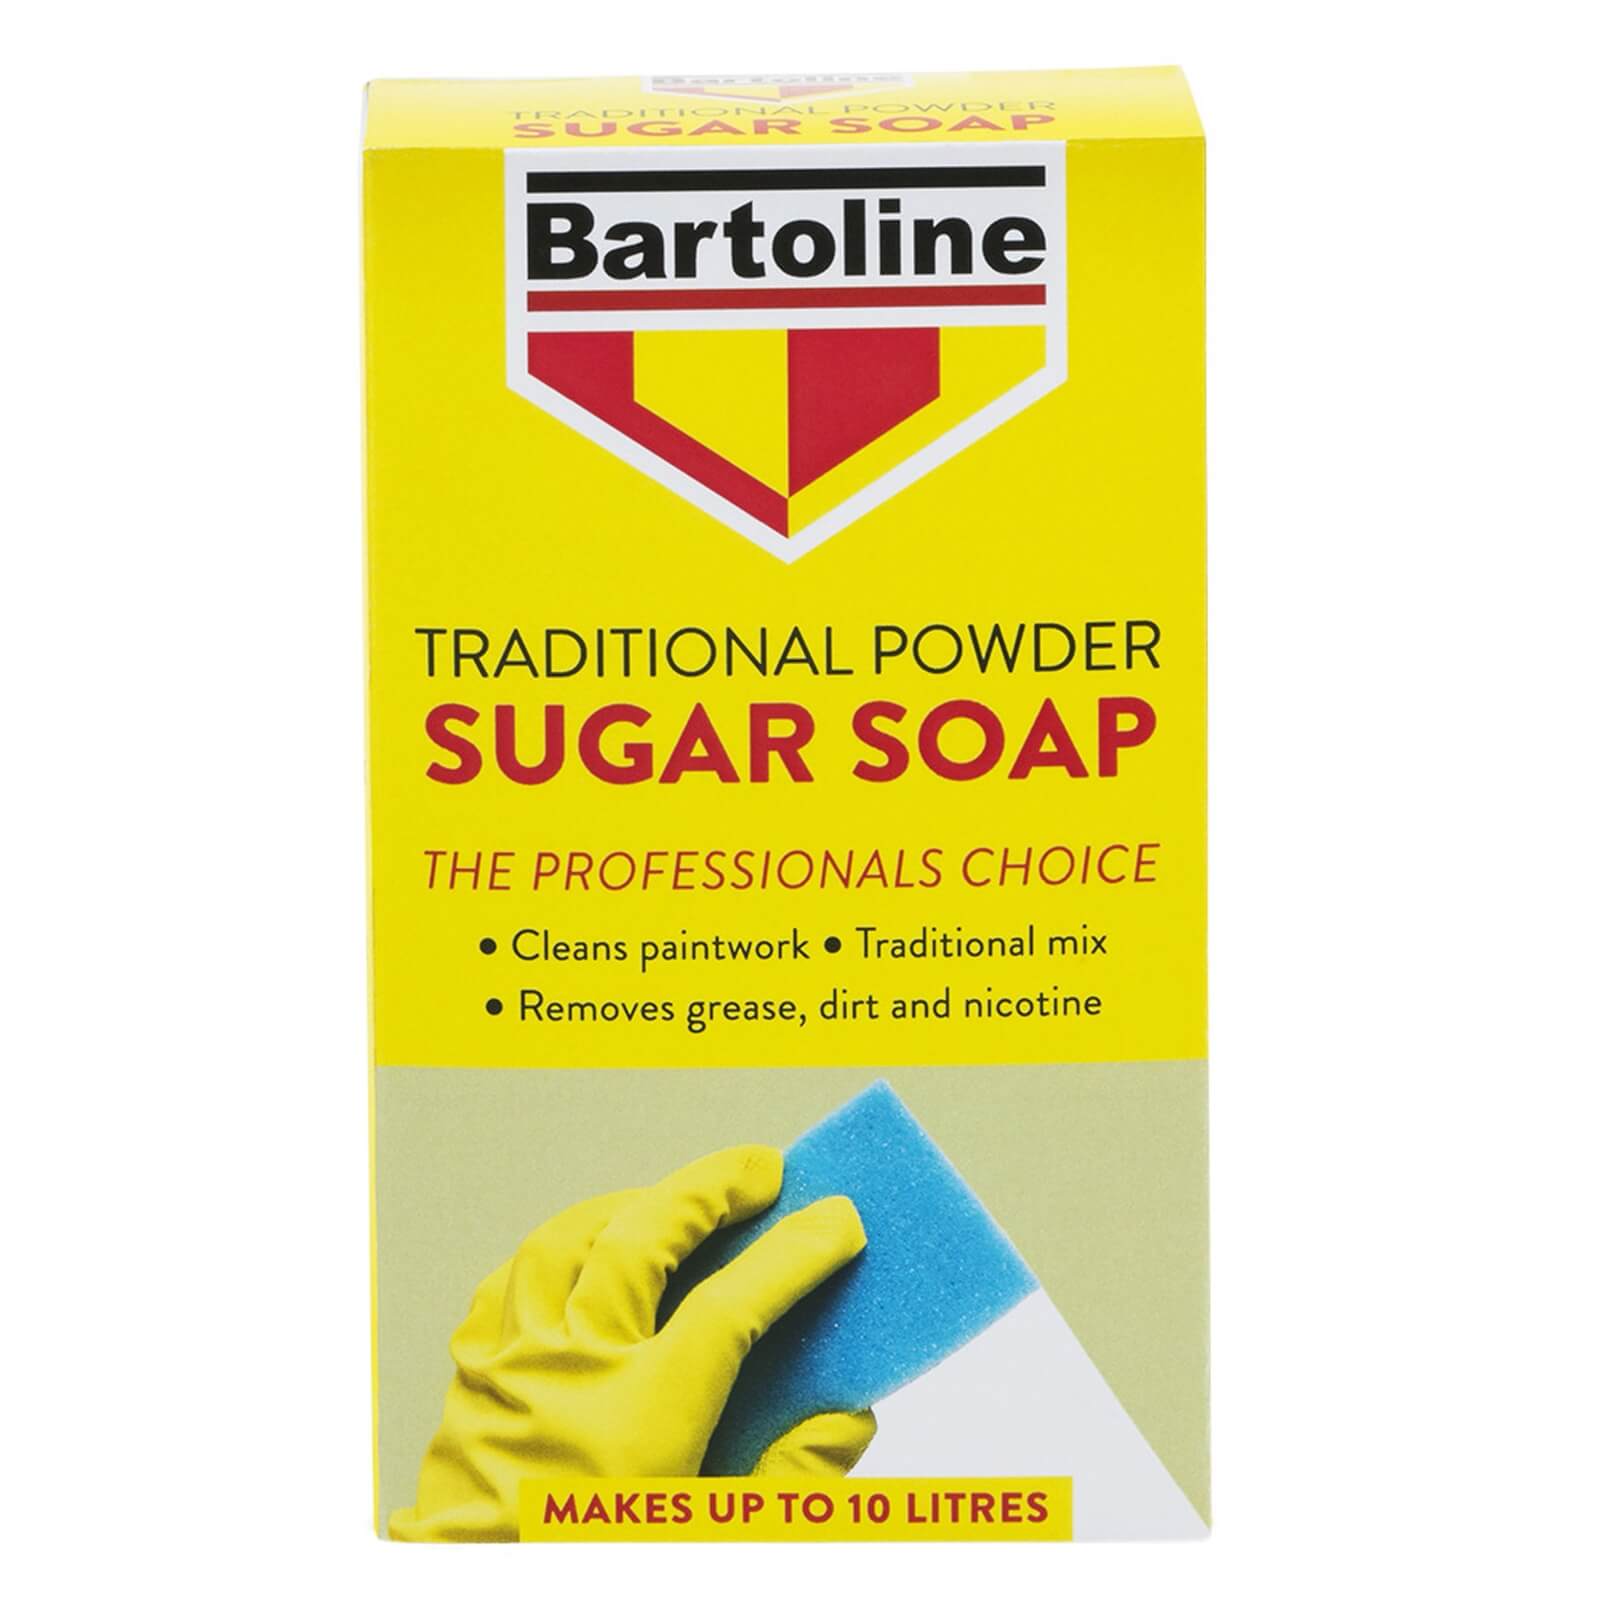 Bartoline Traditional Powder Sugar Soap - 500g